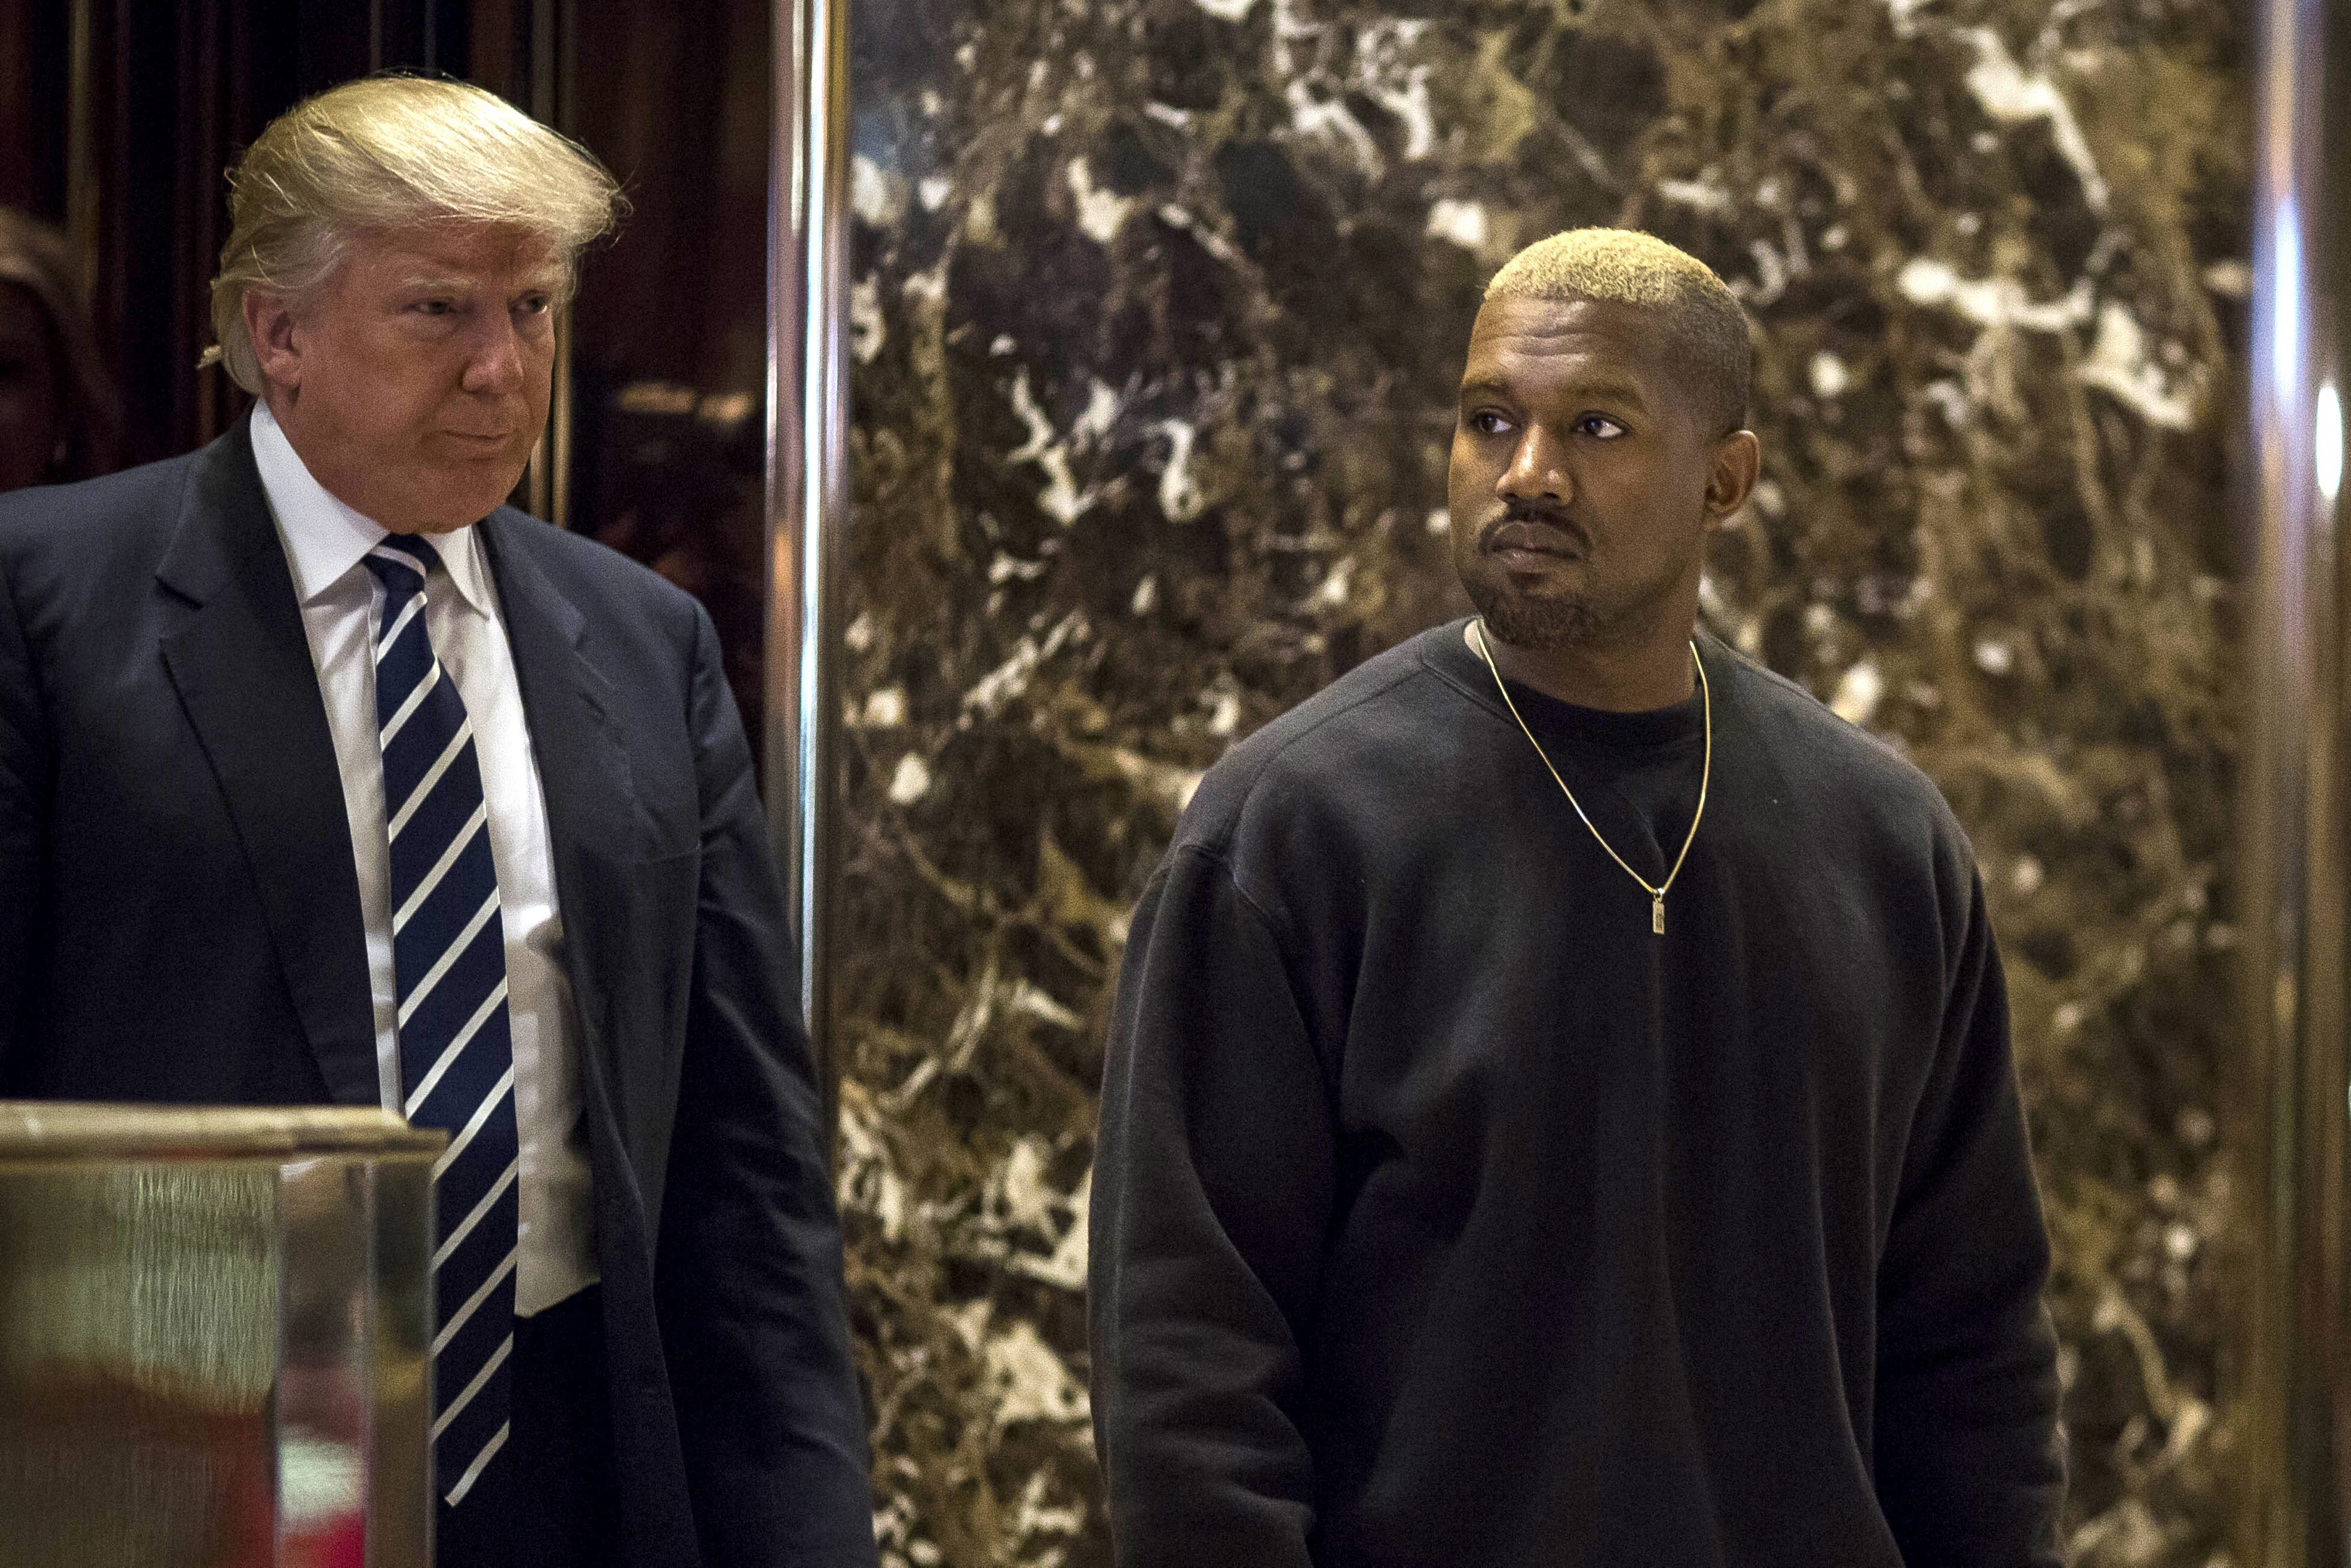 O Kanye West θα διεκδικήσει και πάλι την προεδρία των ΗΠΑ στις εκλογές του 2024